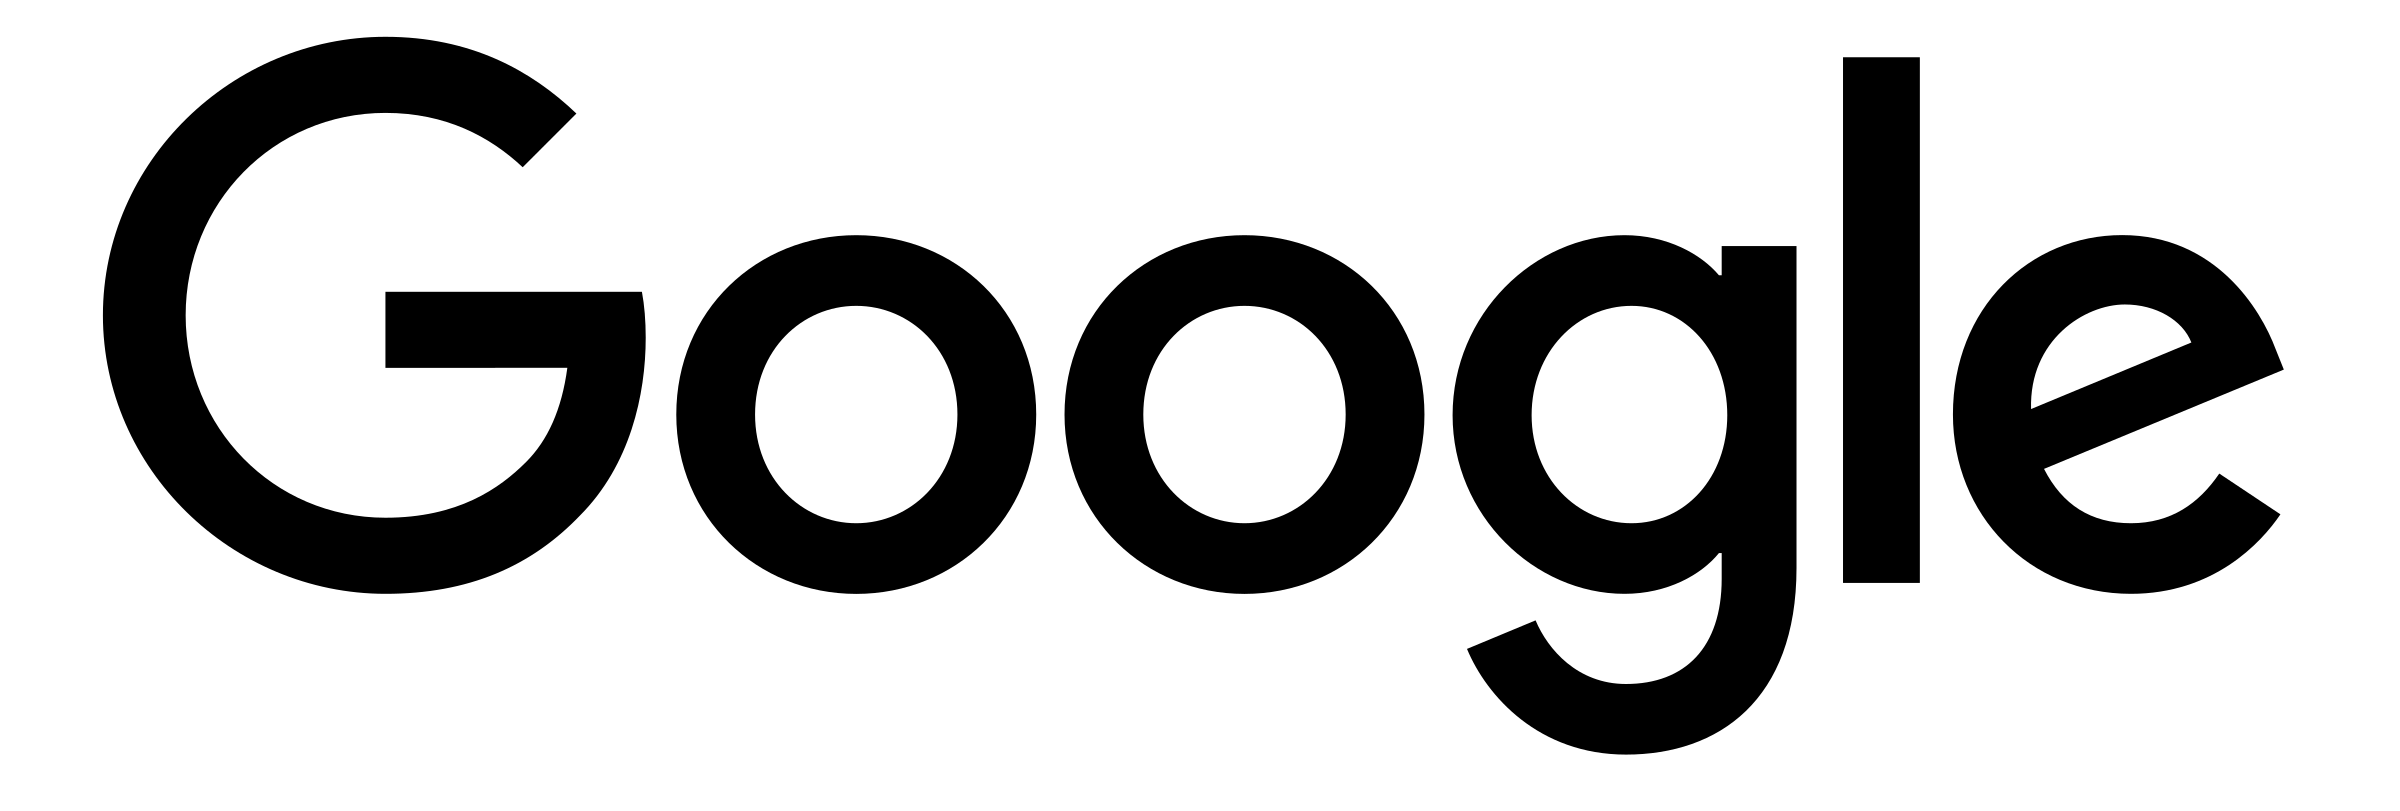 Google Logo PNG Background